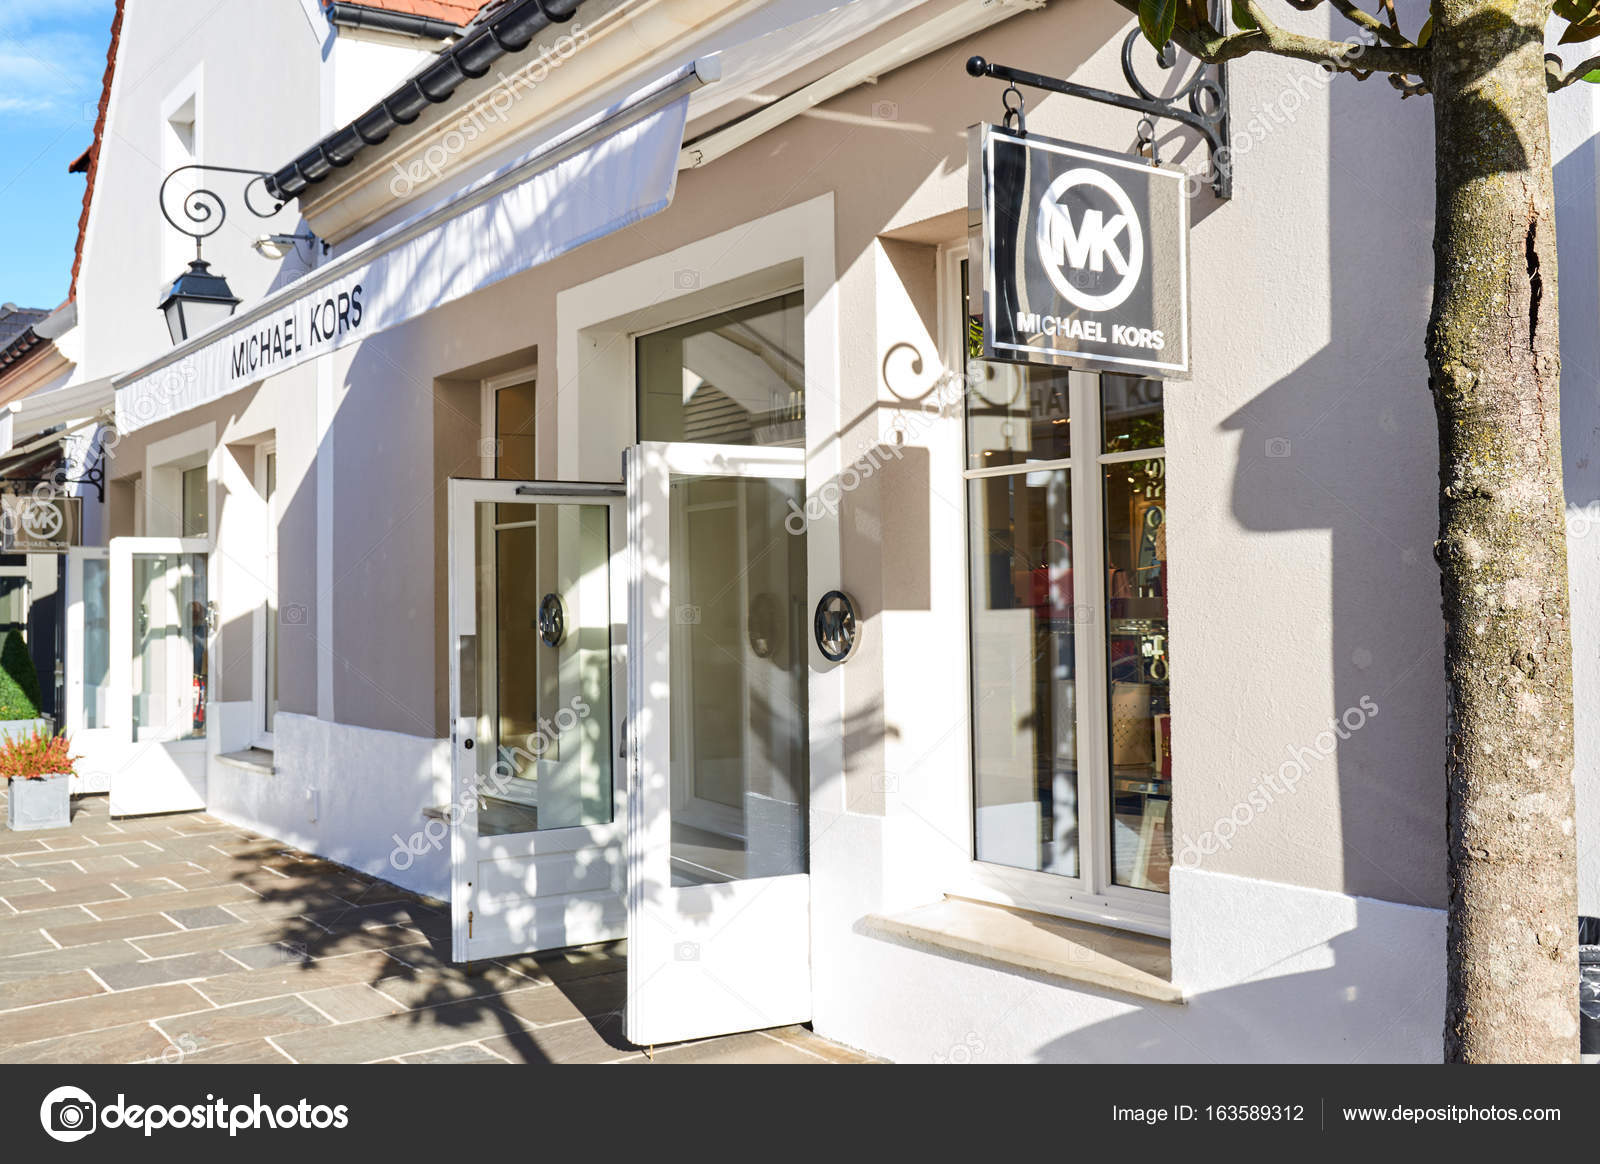 Michael Kors boutique in La Vallee 